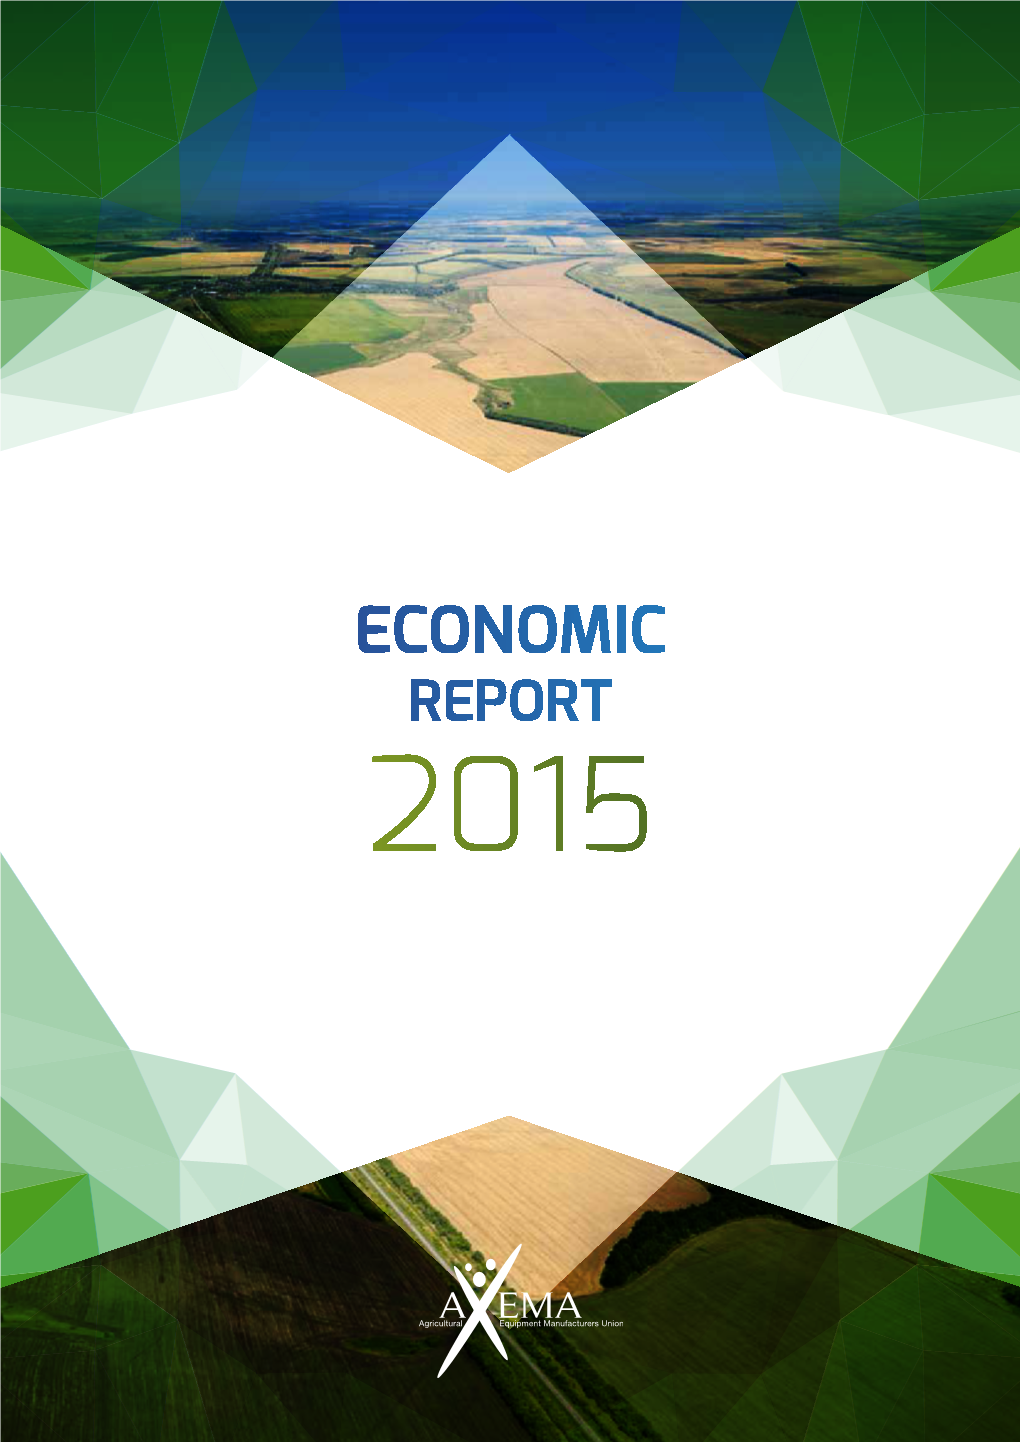 Economic Report 2015 ►French Contribution to Agriculture (% of the Total for the European Union in 2015)